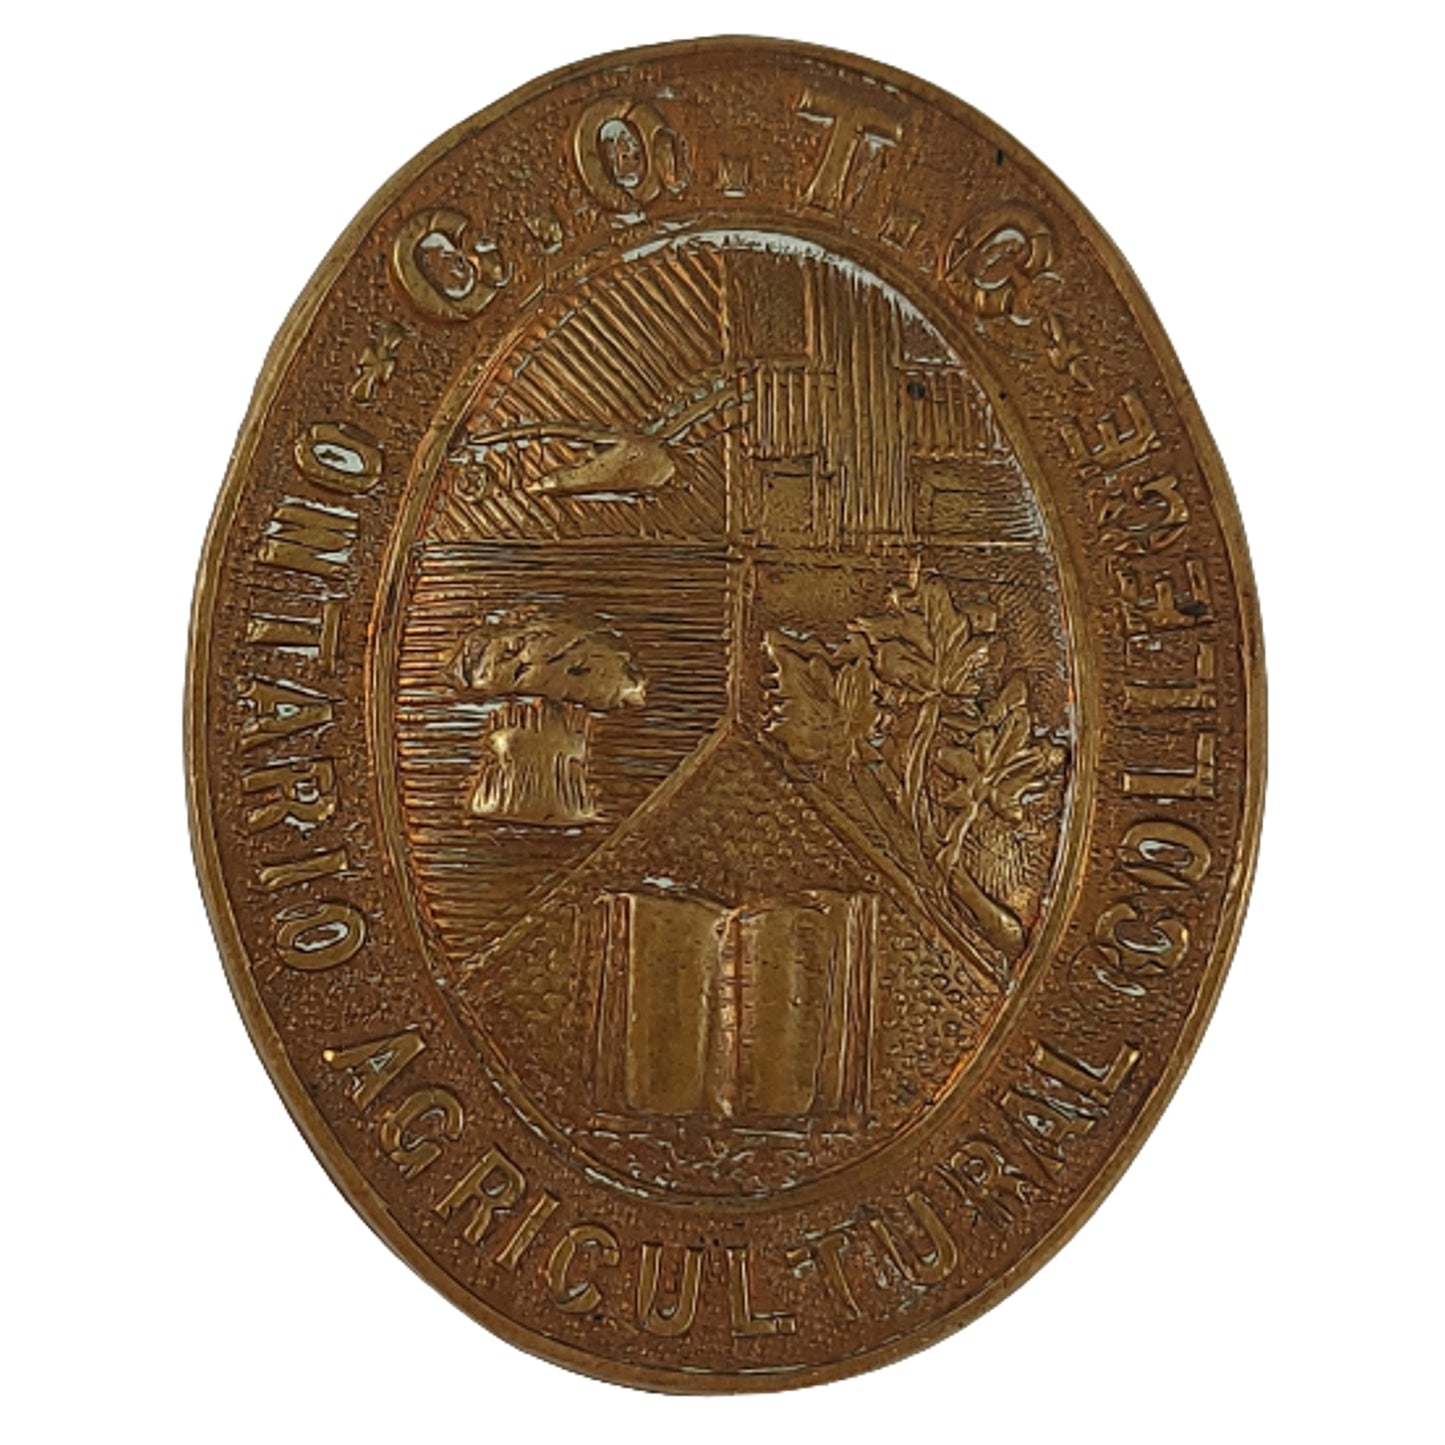 WW1 COTC Ontario Agricultural College Contingent Cap Badge - Ellis 1916